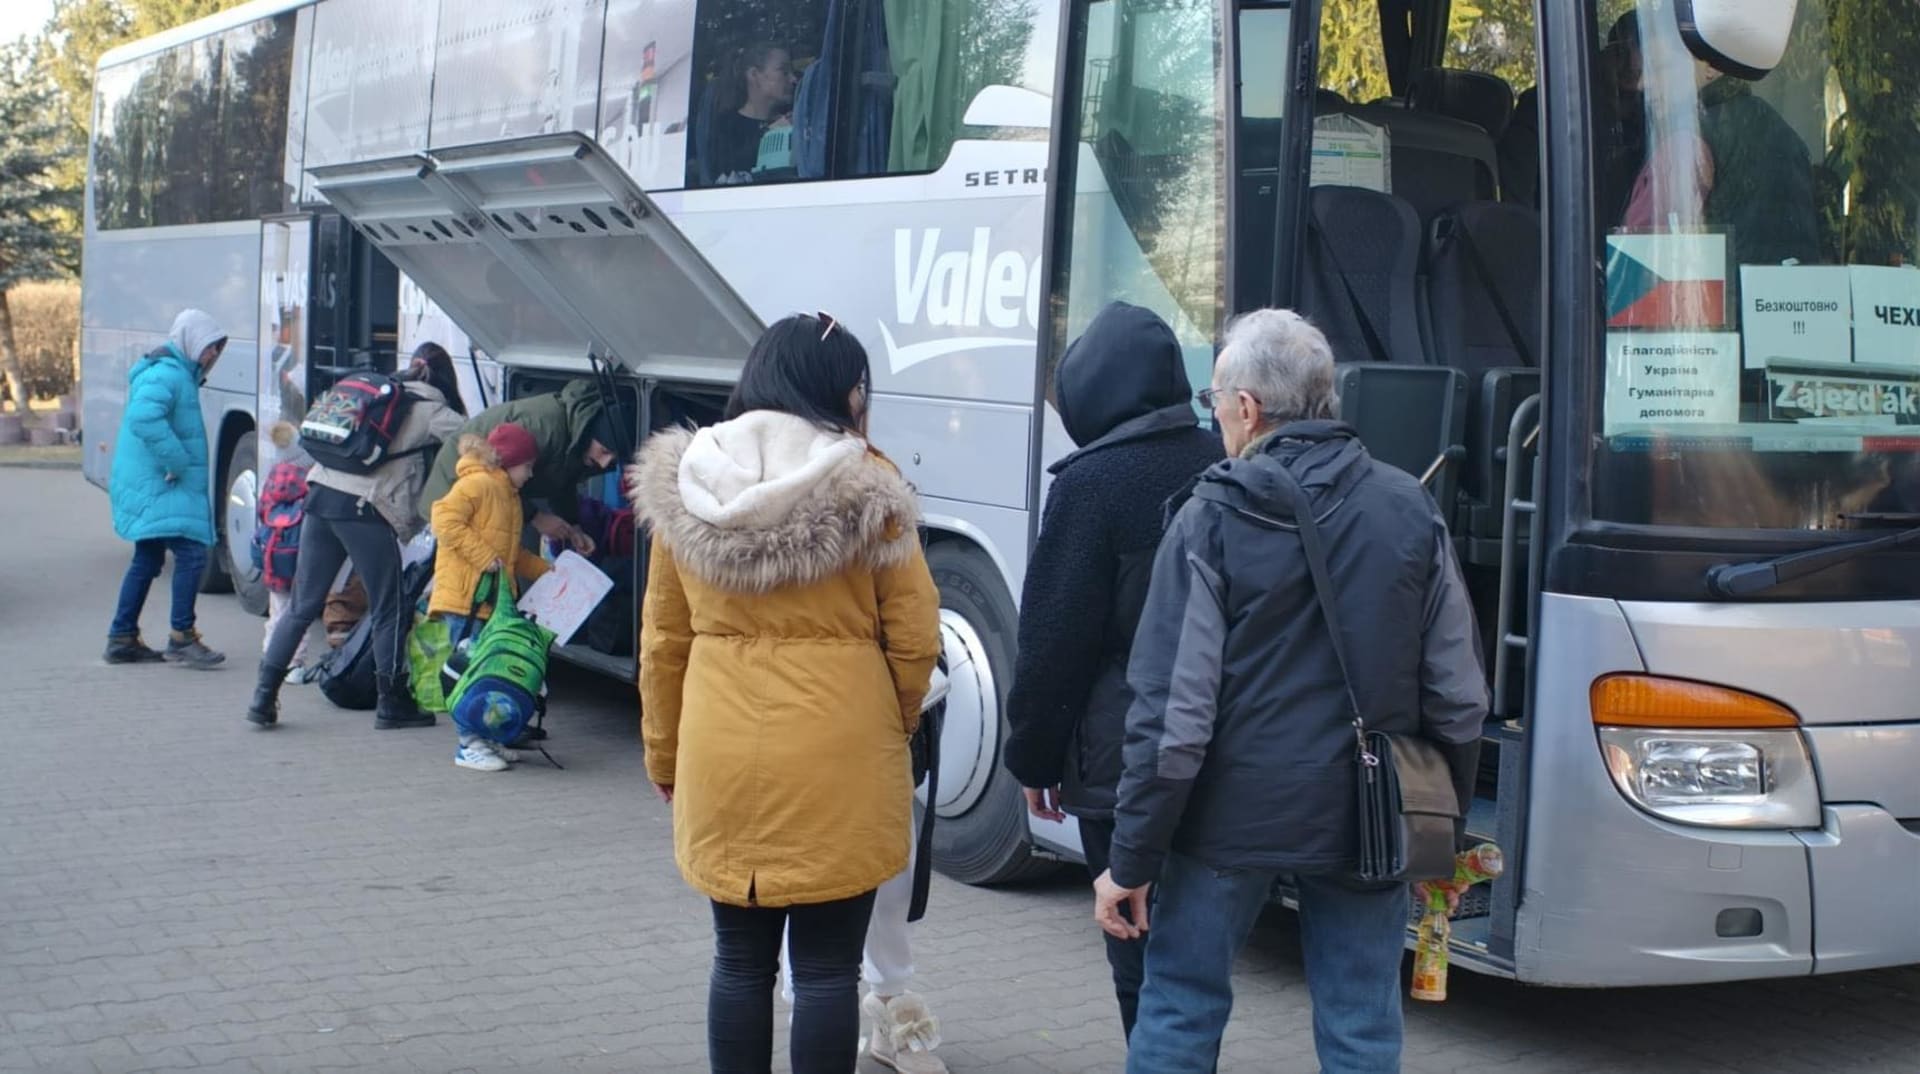 Celkem se dobrovolníkům podařilo přepravit do ČR přes 300 ukrajinských uprchlíků. Ve valné většině případů jde o ženy, děti a seniory.